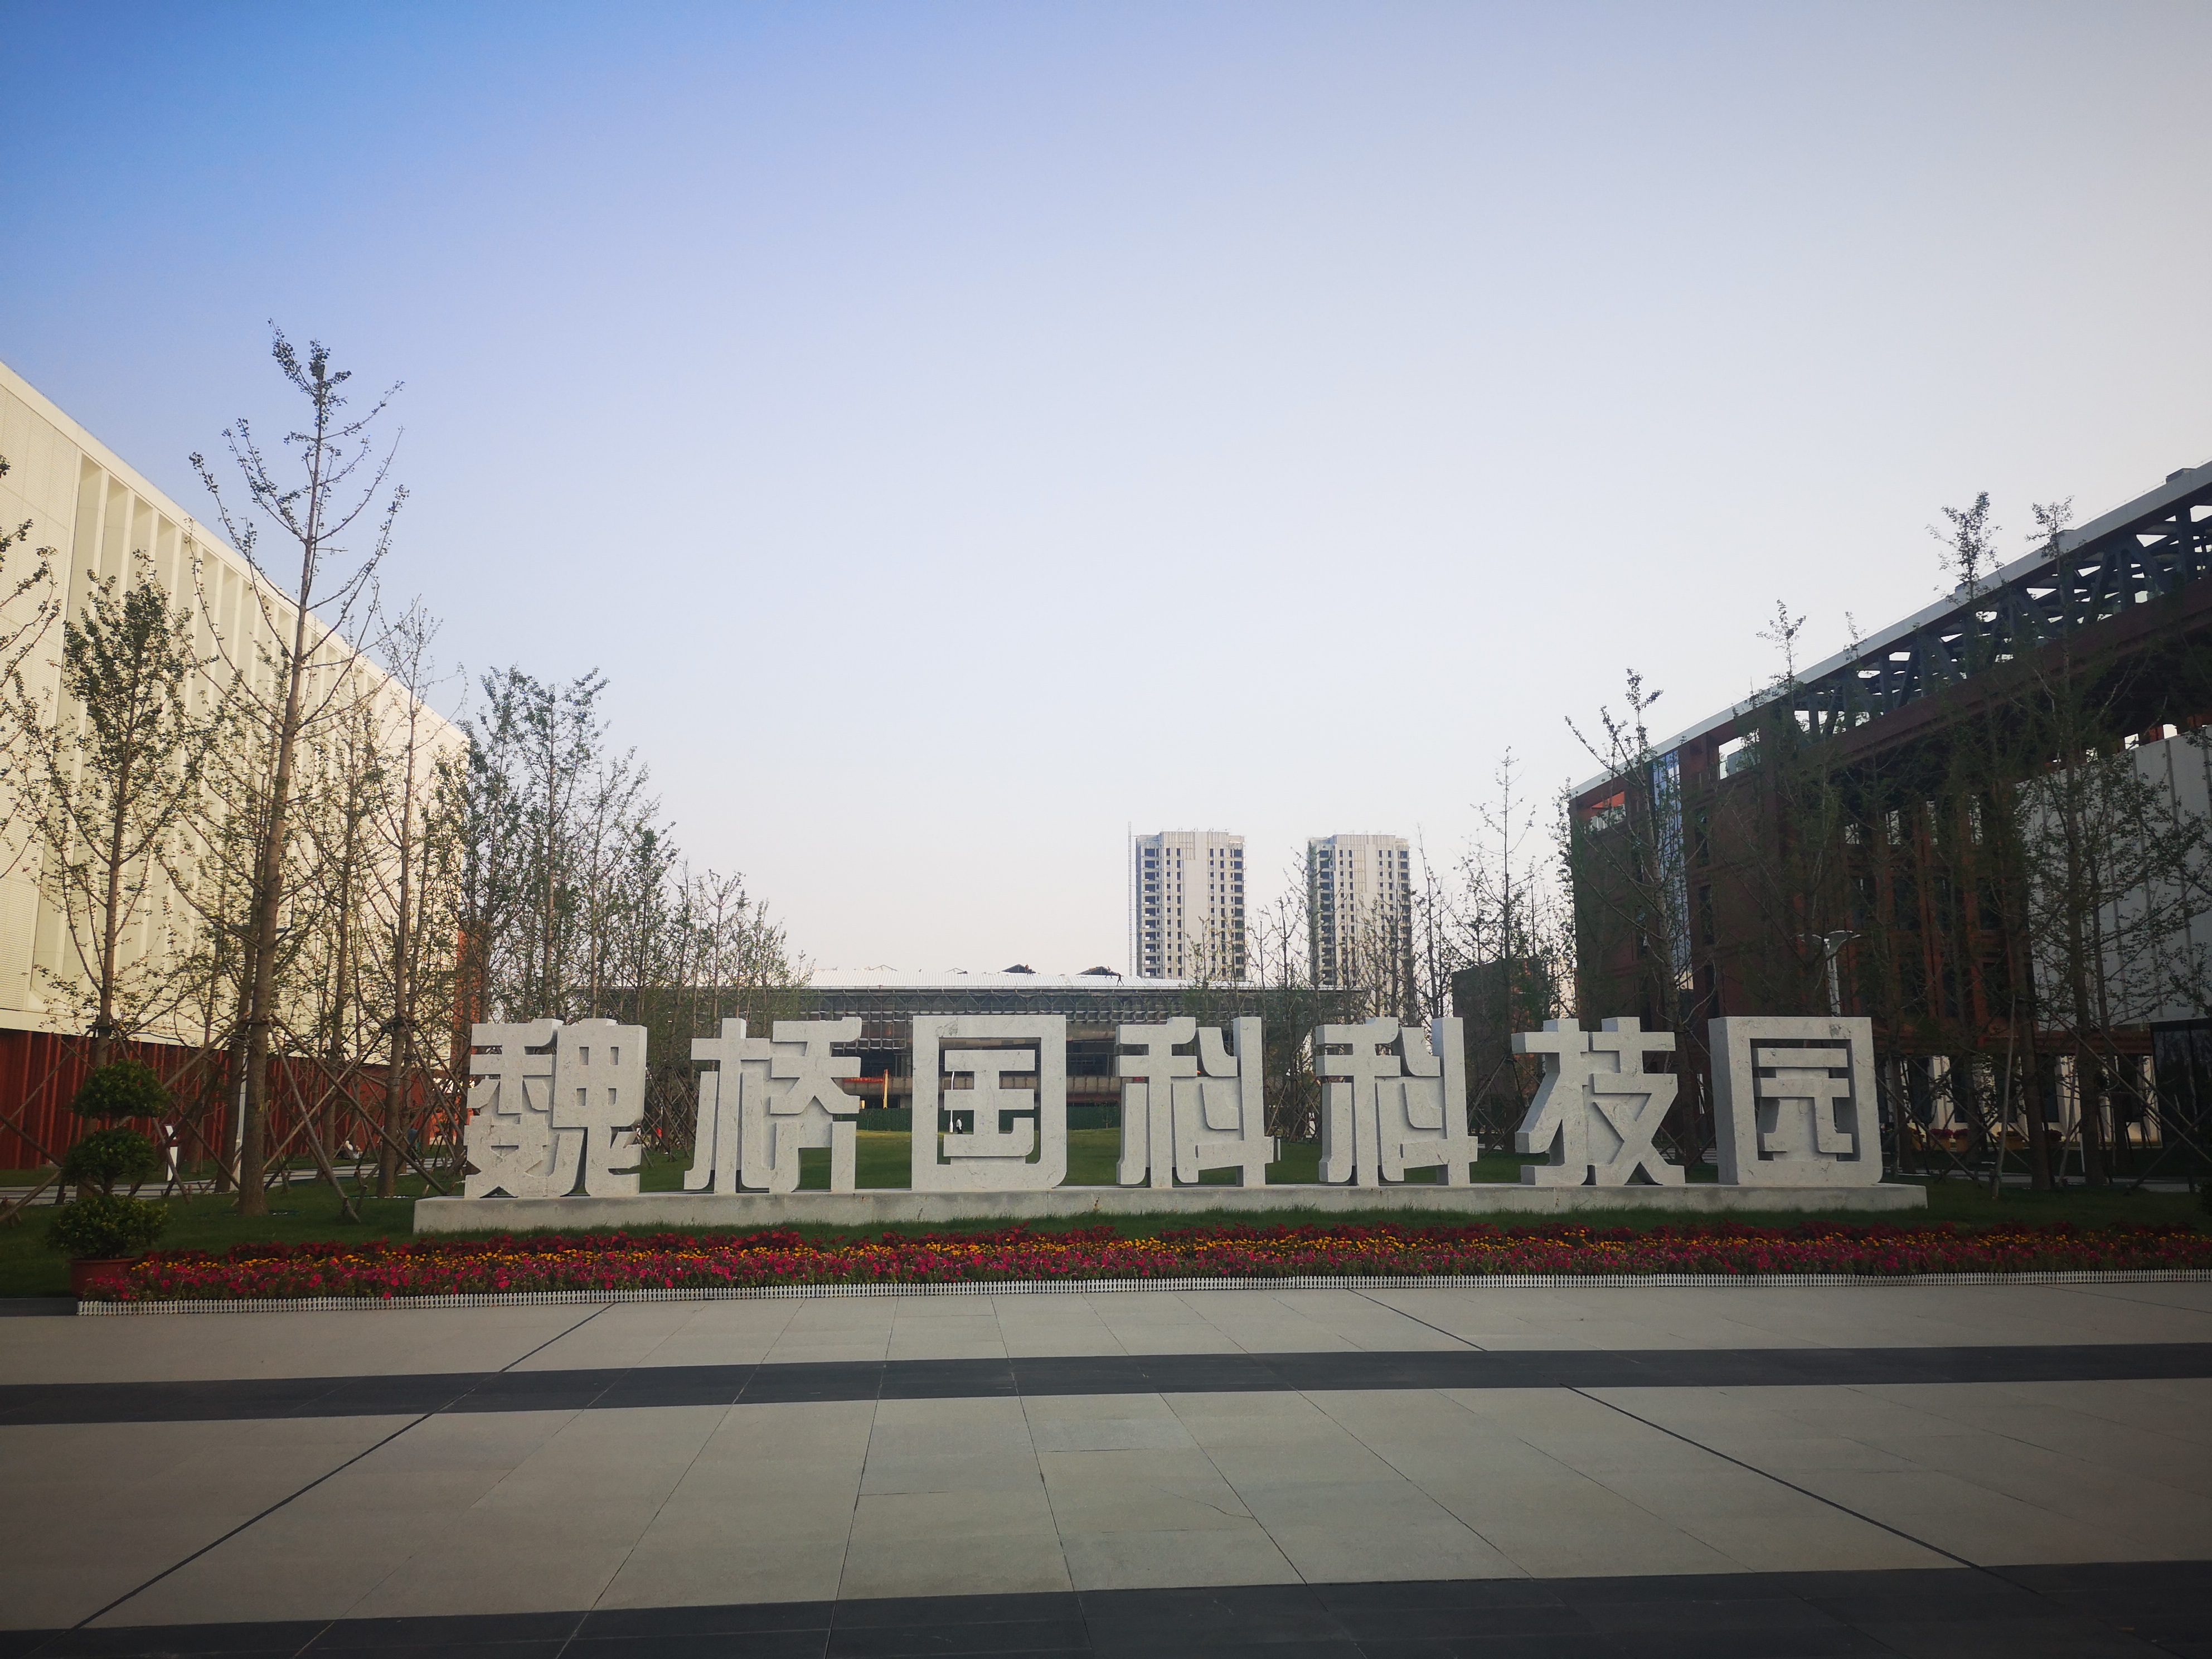 滨州理工大学（筹备中）建设顺利！滨州魏桥国科科技园最新进展来了